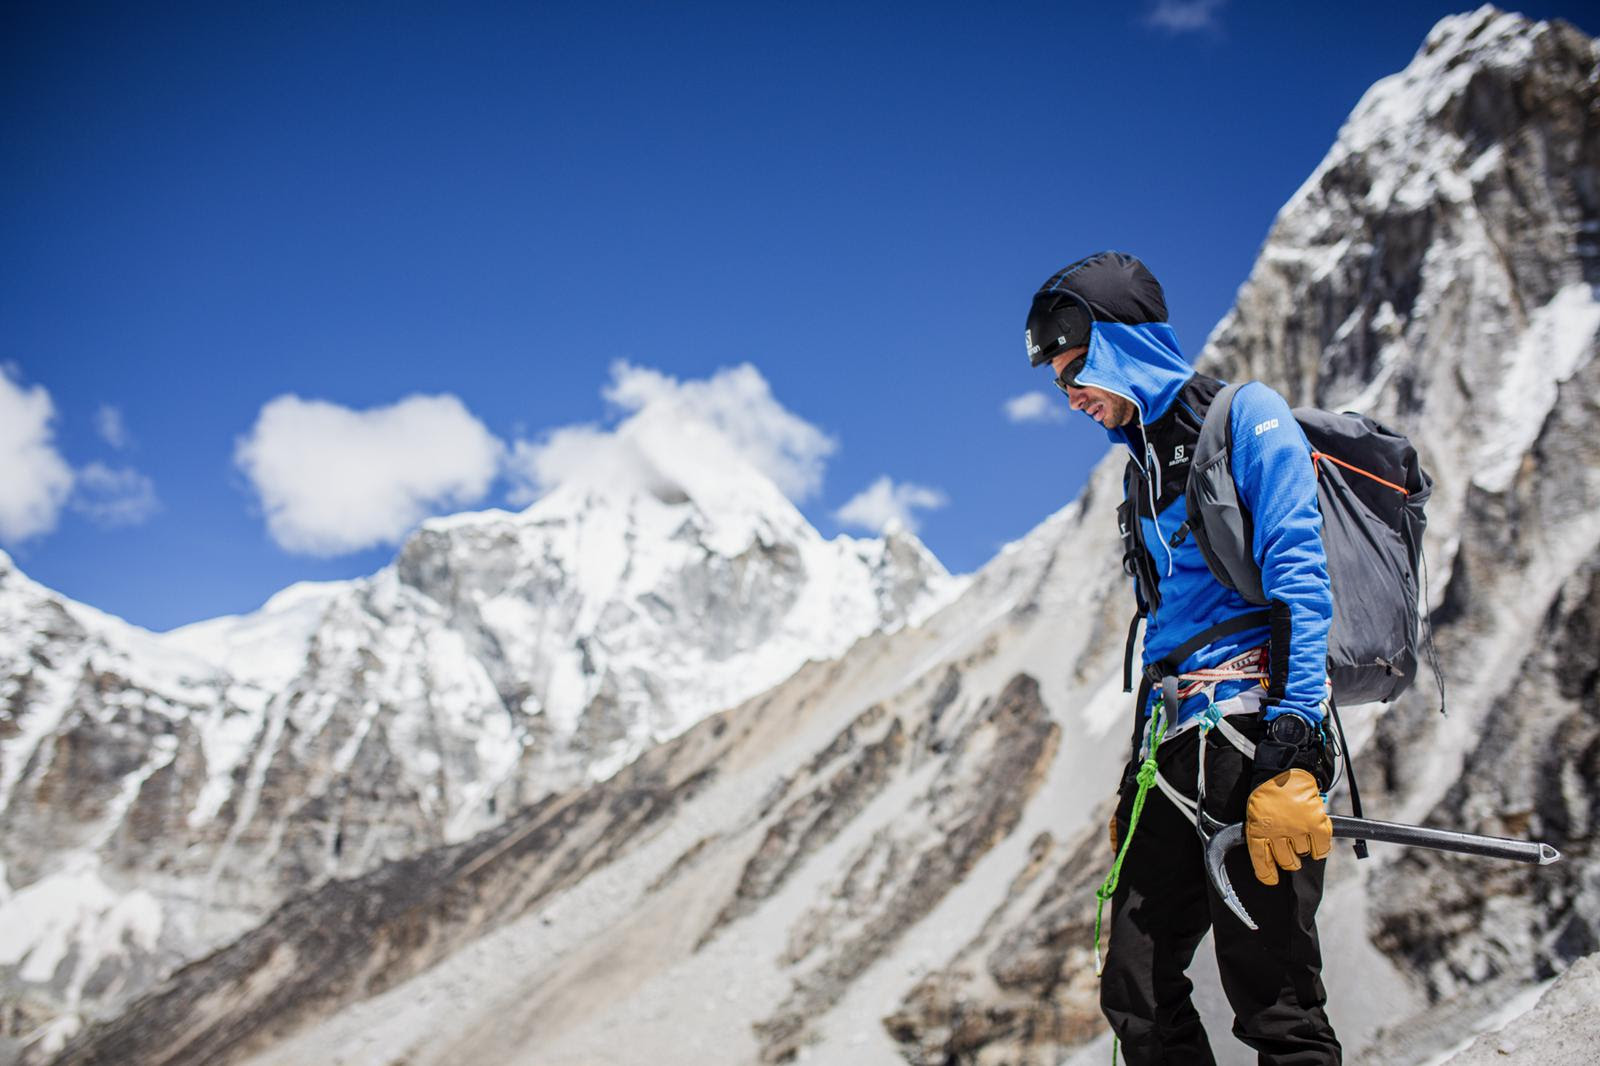 Agenda Kilian Jornet 2020: dos carreras y volver al ataque en el Himalaya